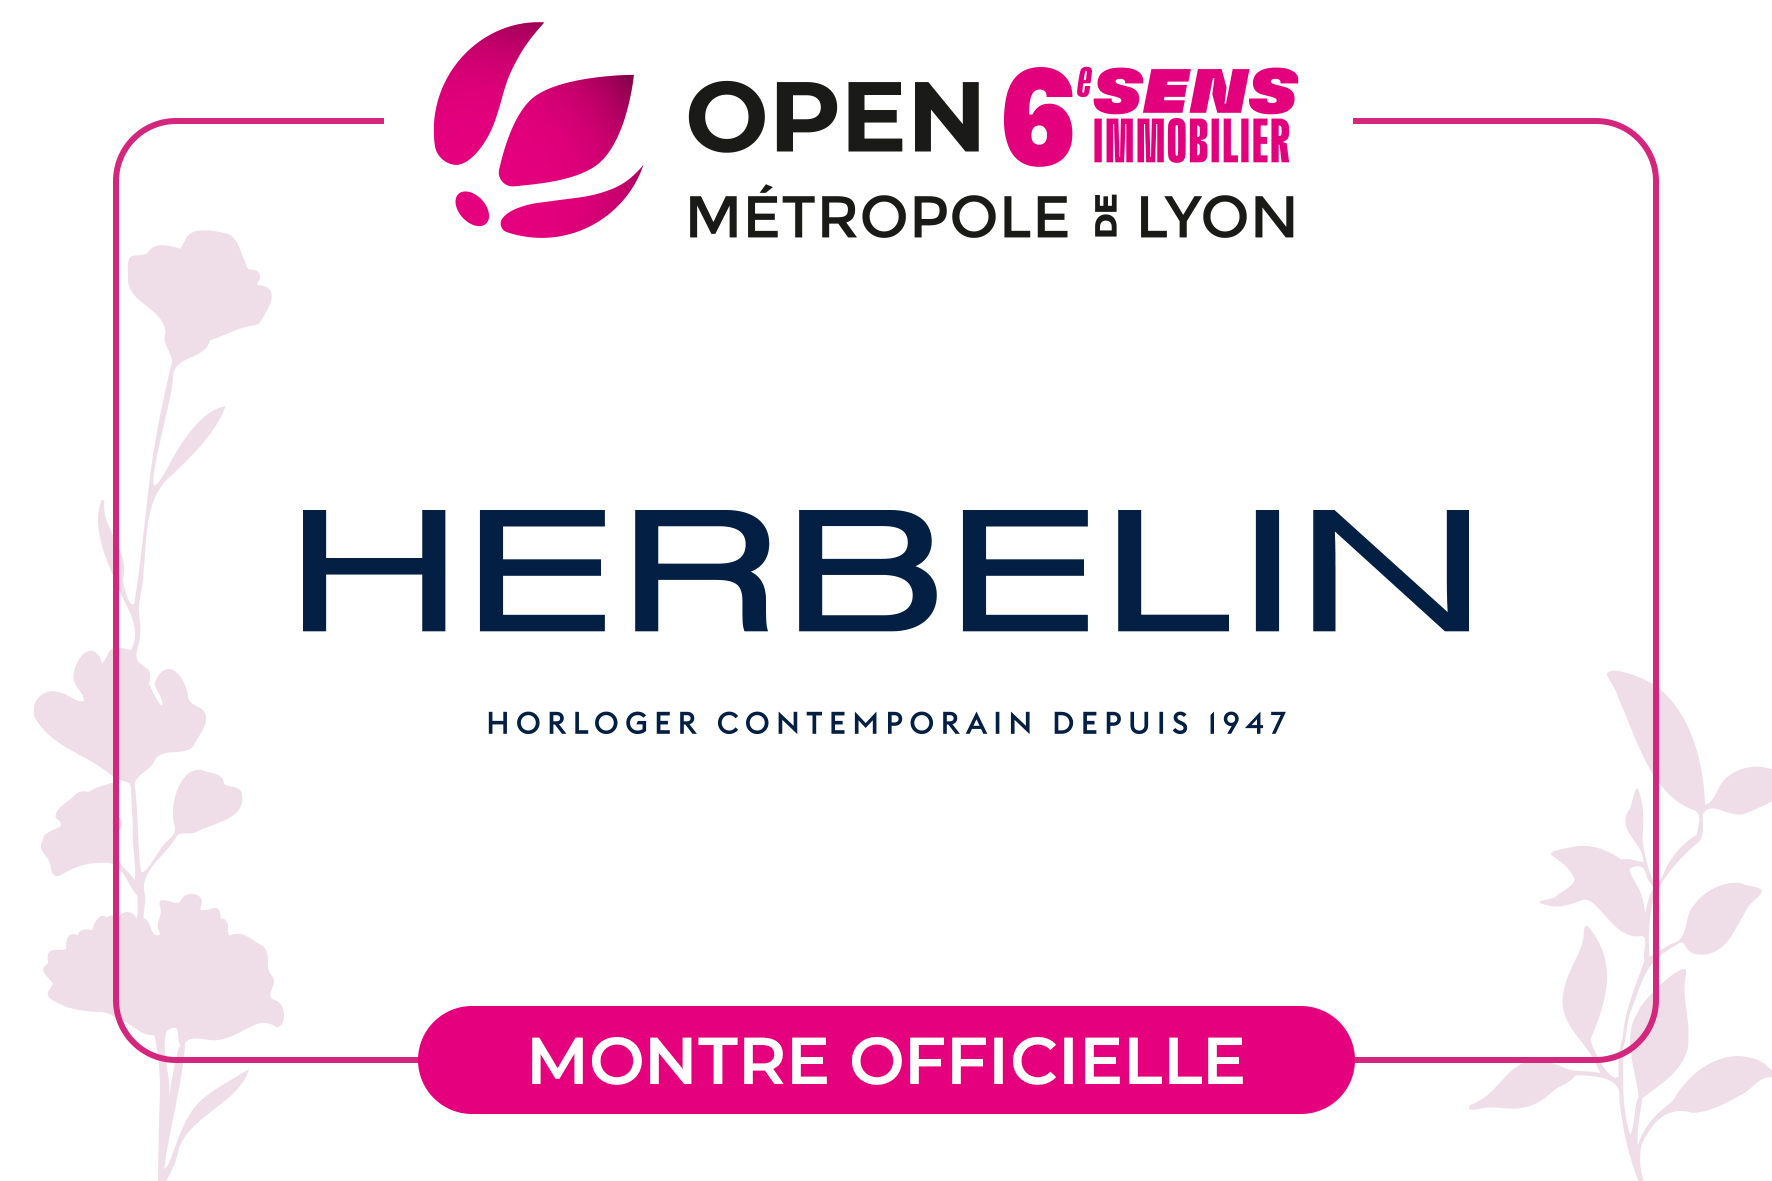 HERBELIN – Chronométreur officiel du tournoi féminin Open 6ème Sens Immobilier